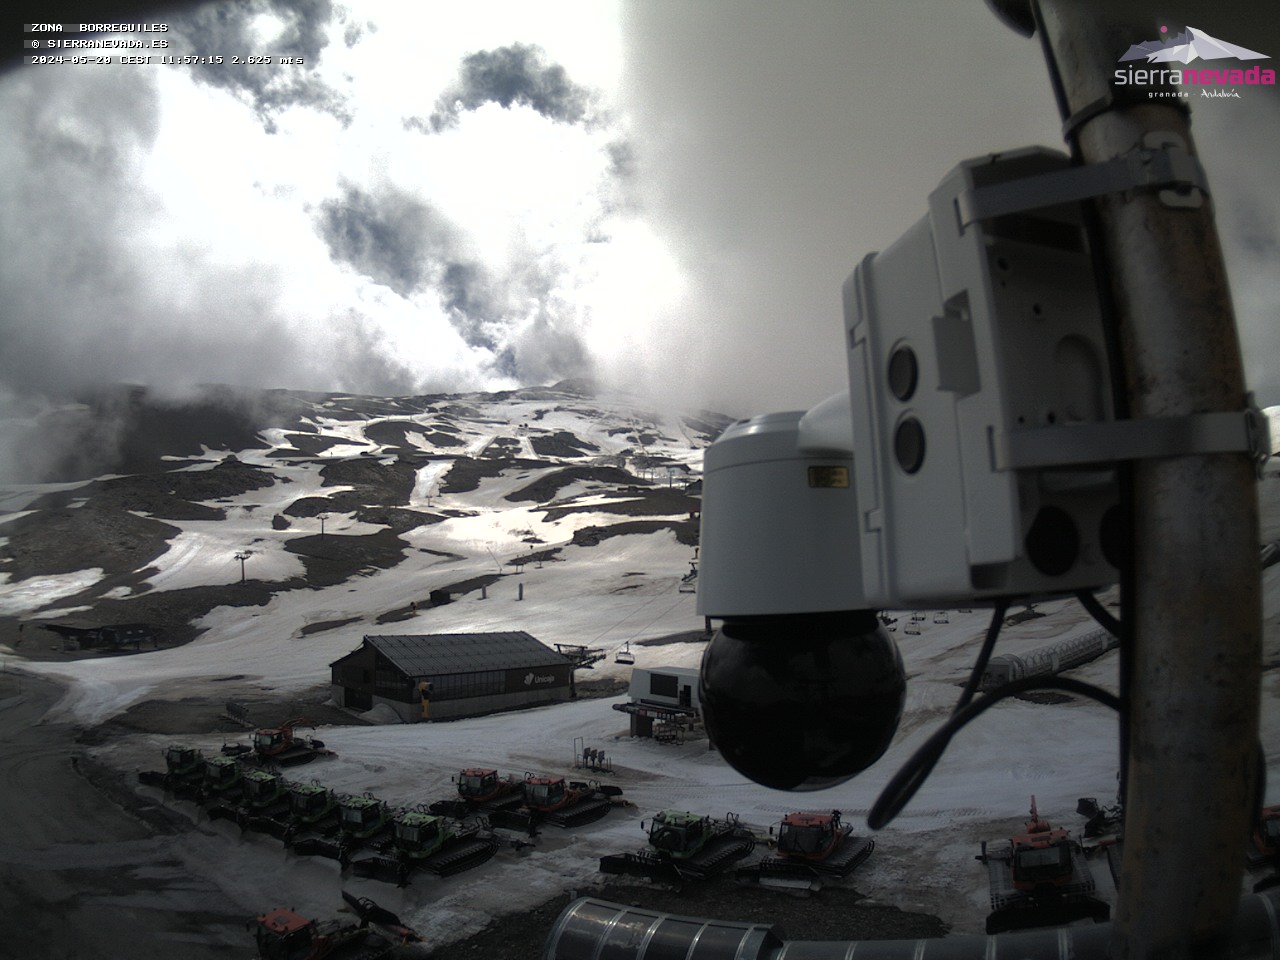 Webcams - sierra nevada